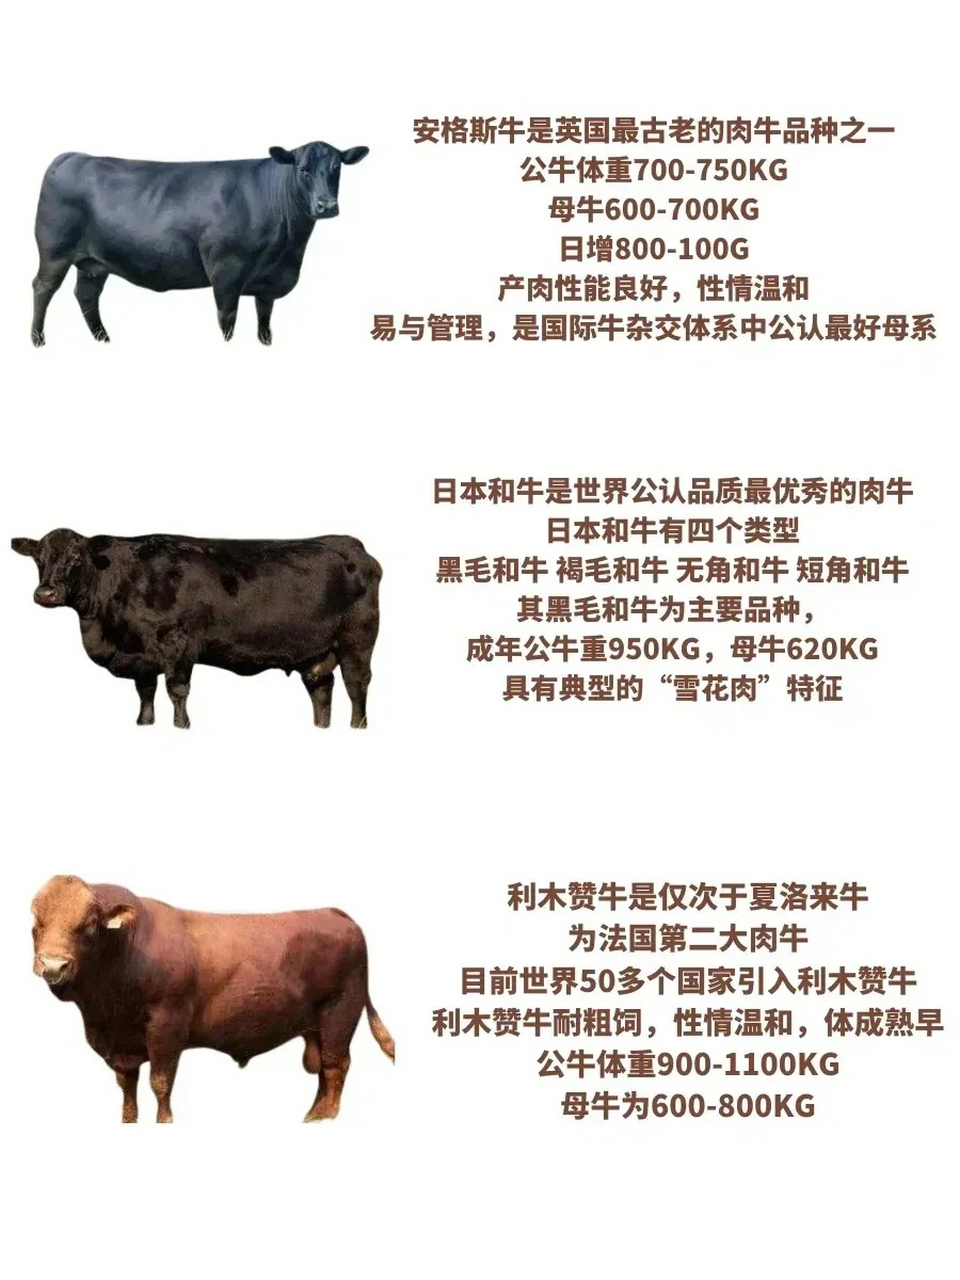 世界八大肉牛,牛肉作为人类主要的食品来源之一,肉牛的肉质和产量